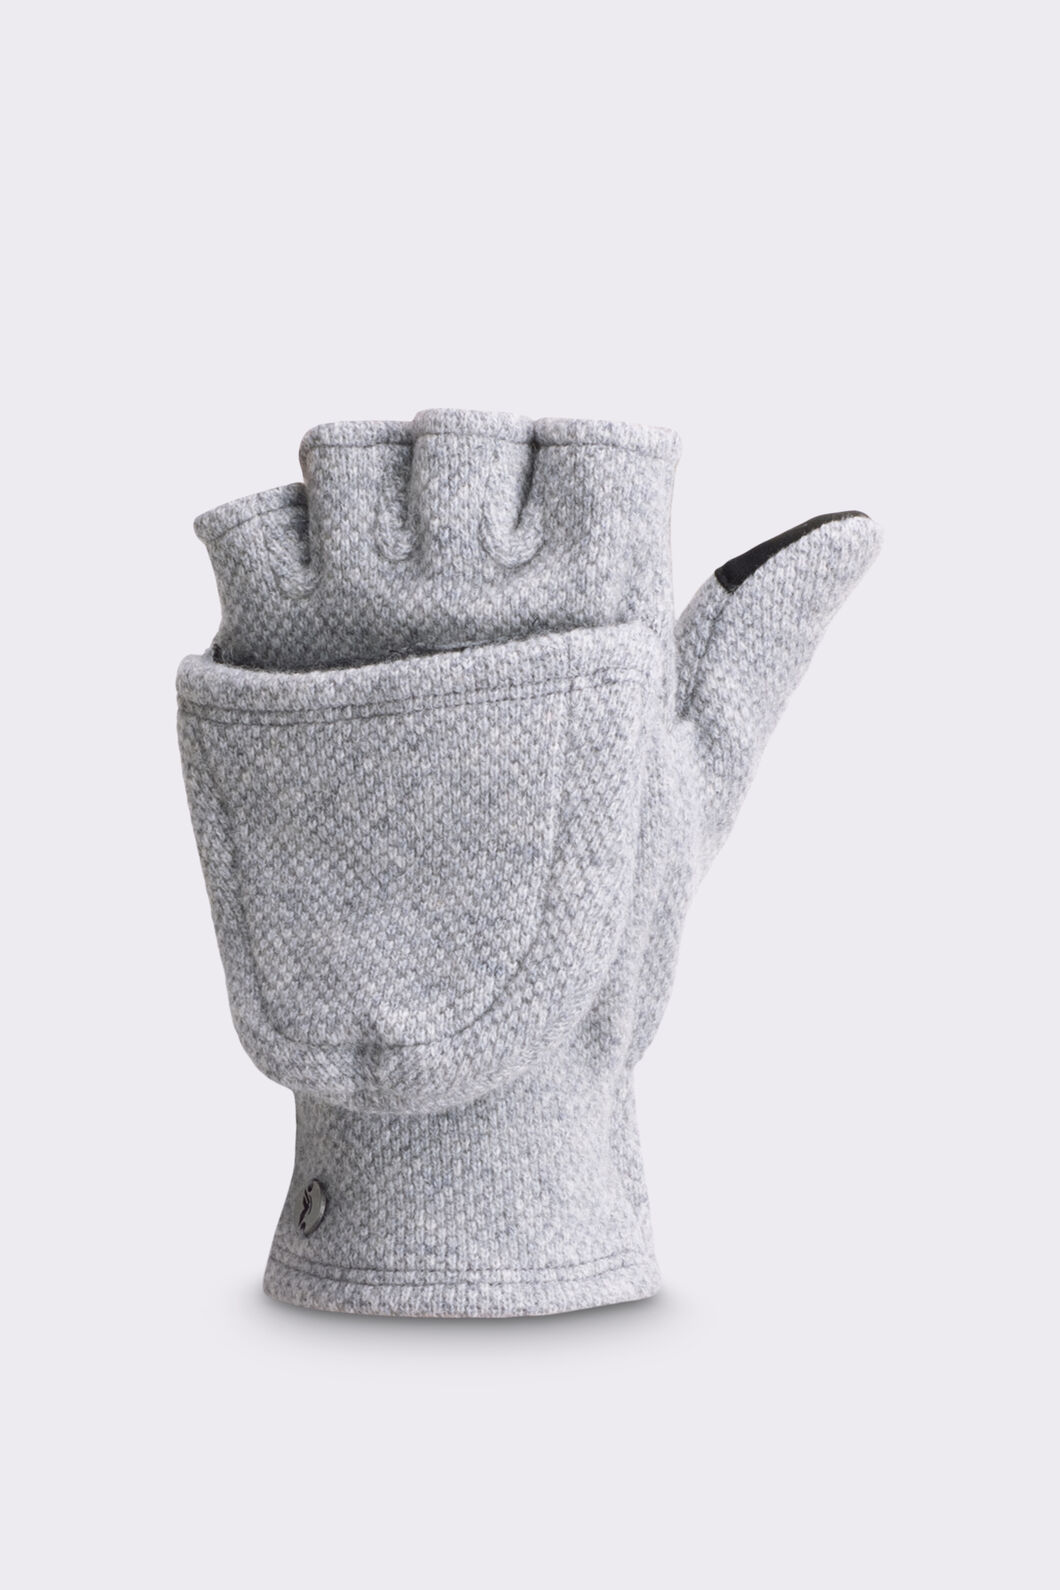 Macpac Merino Fingerless Gloves